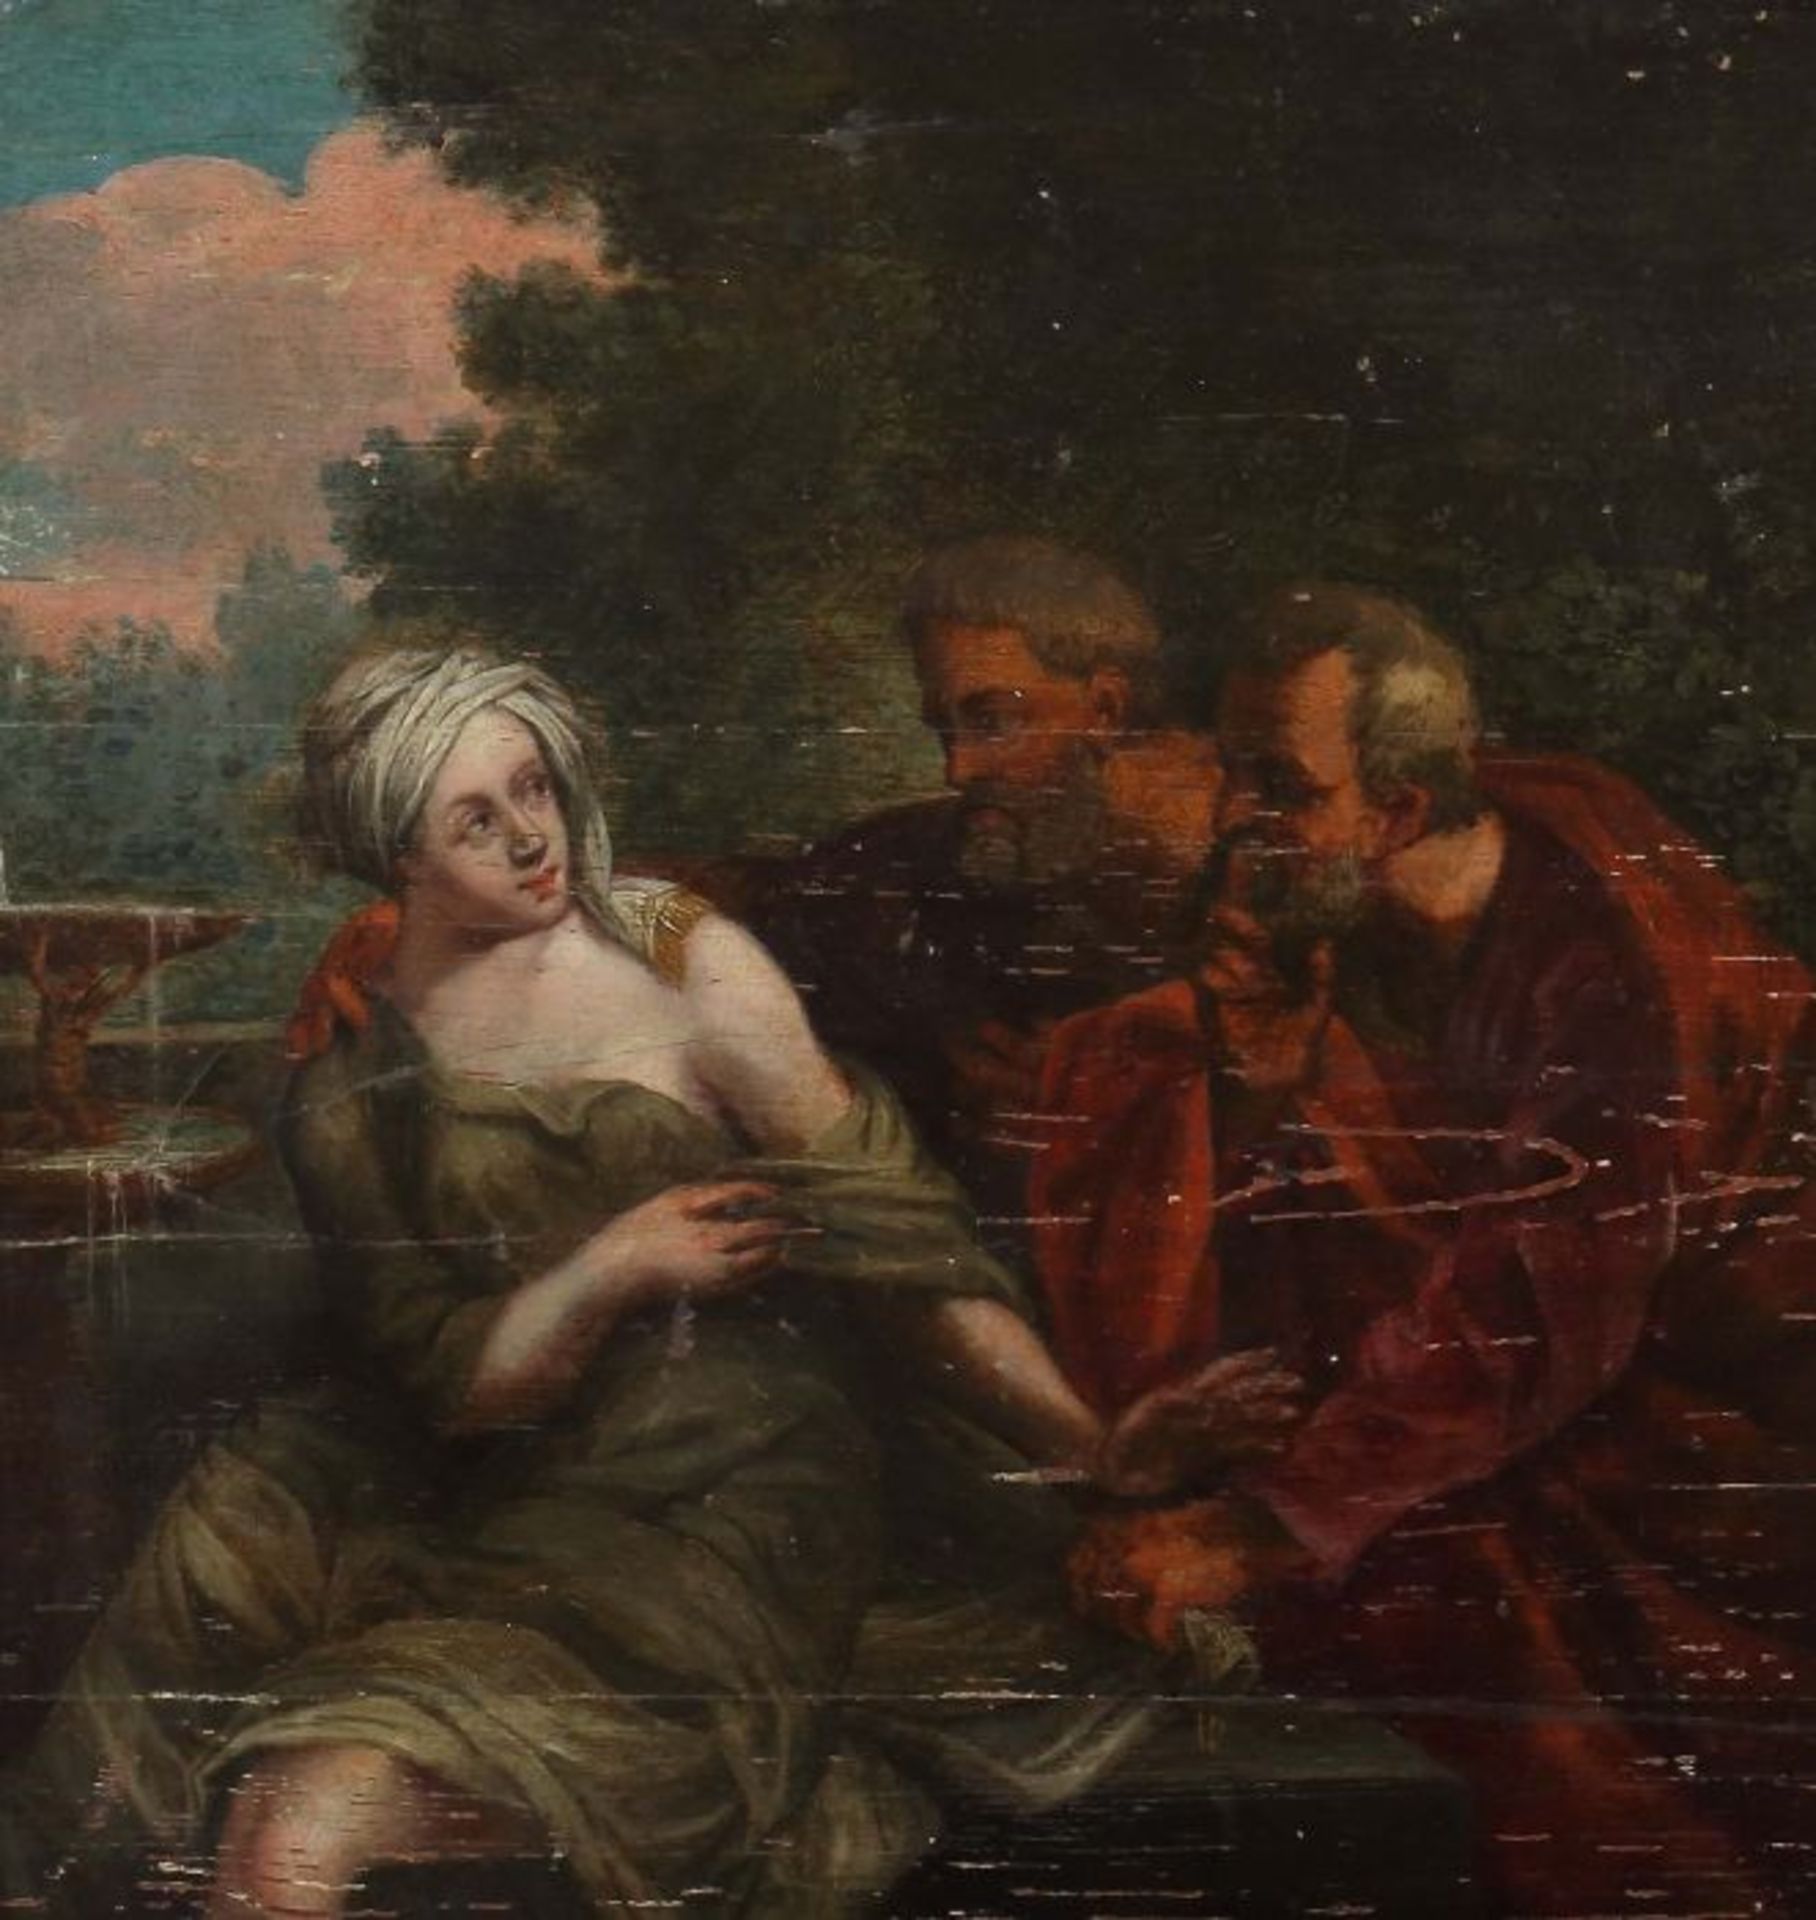 Maler des 18. Jh."Susanna und die Ältesten", die beiden Ältesten Susanne beim Bade auflauernd,